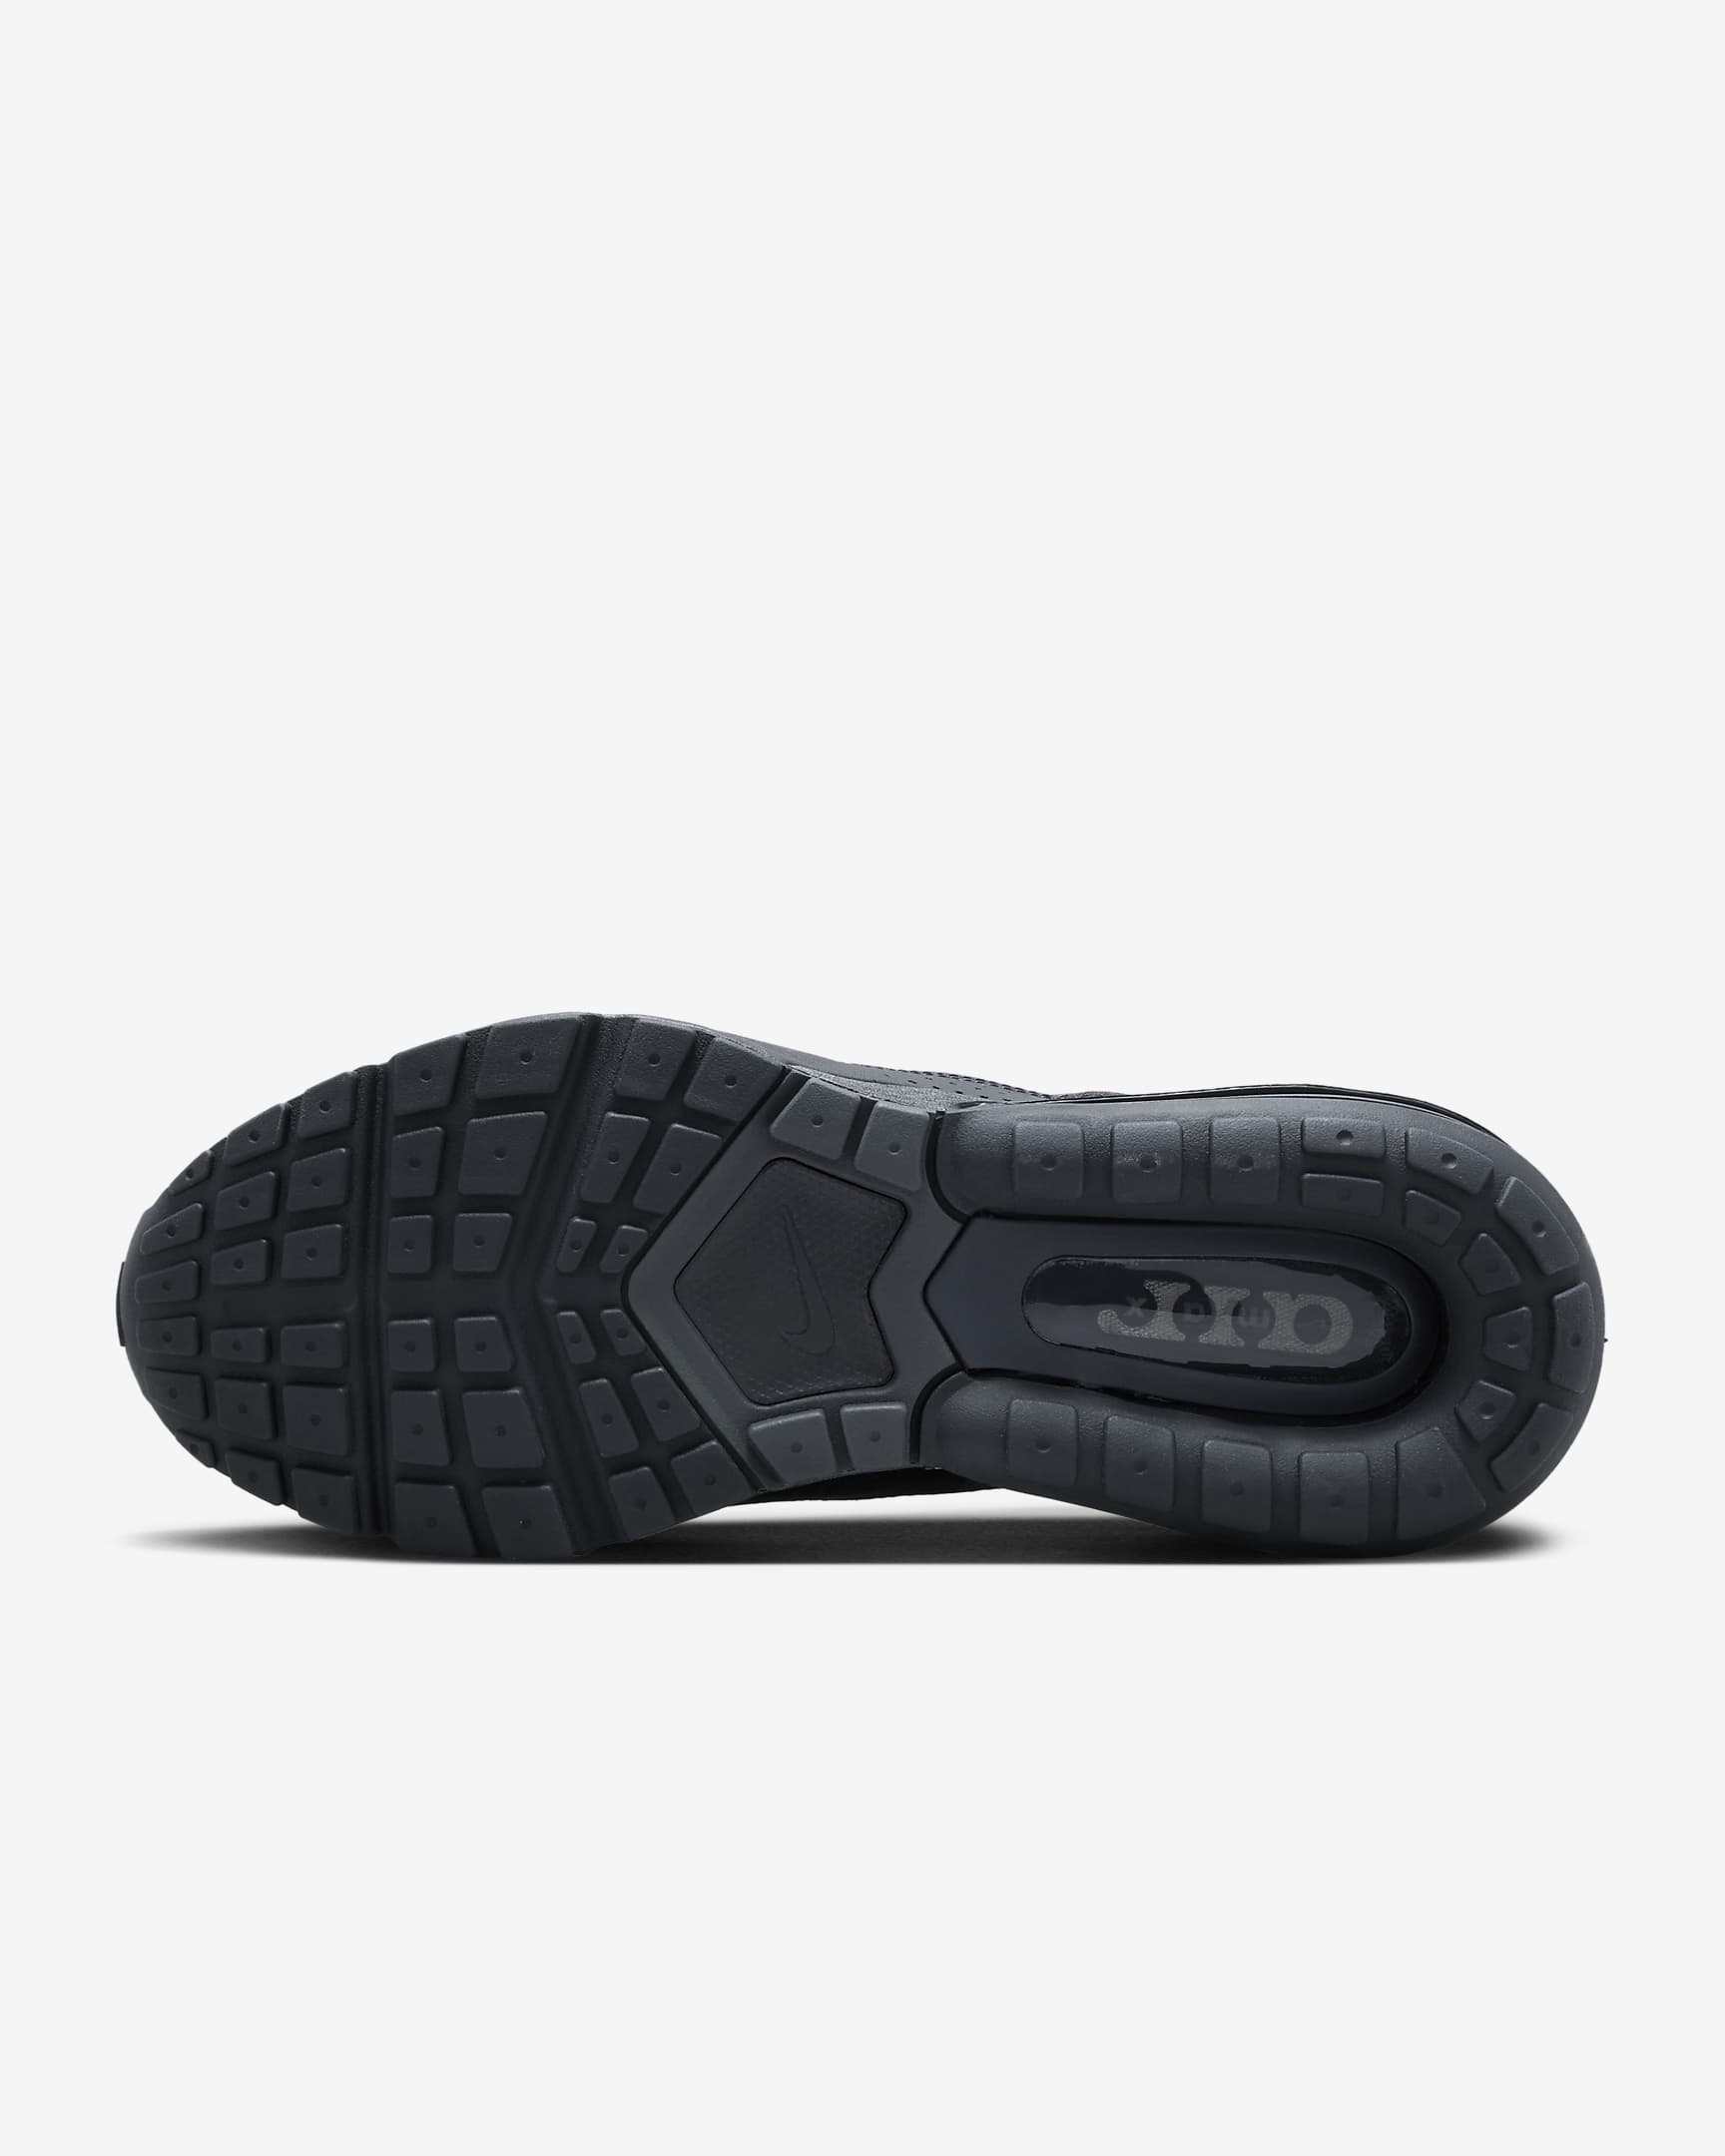 Chaussure Nike Air Max Pulse pour homme - Noir/Anthracite/Noir